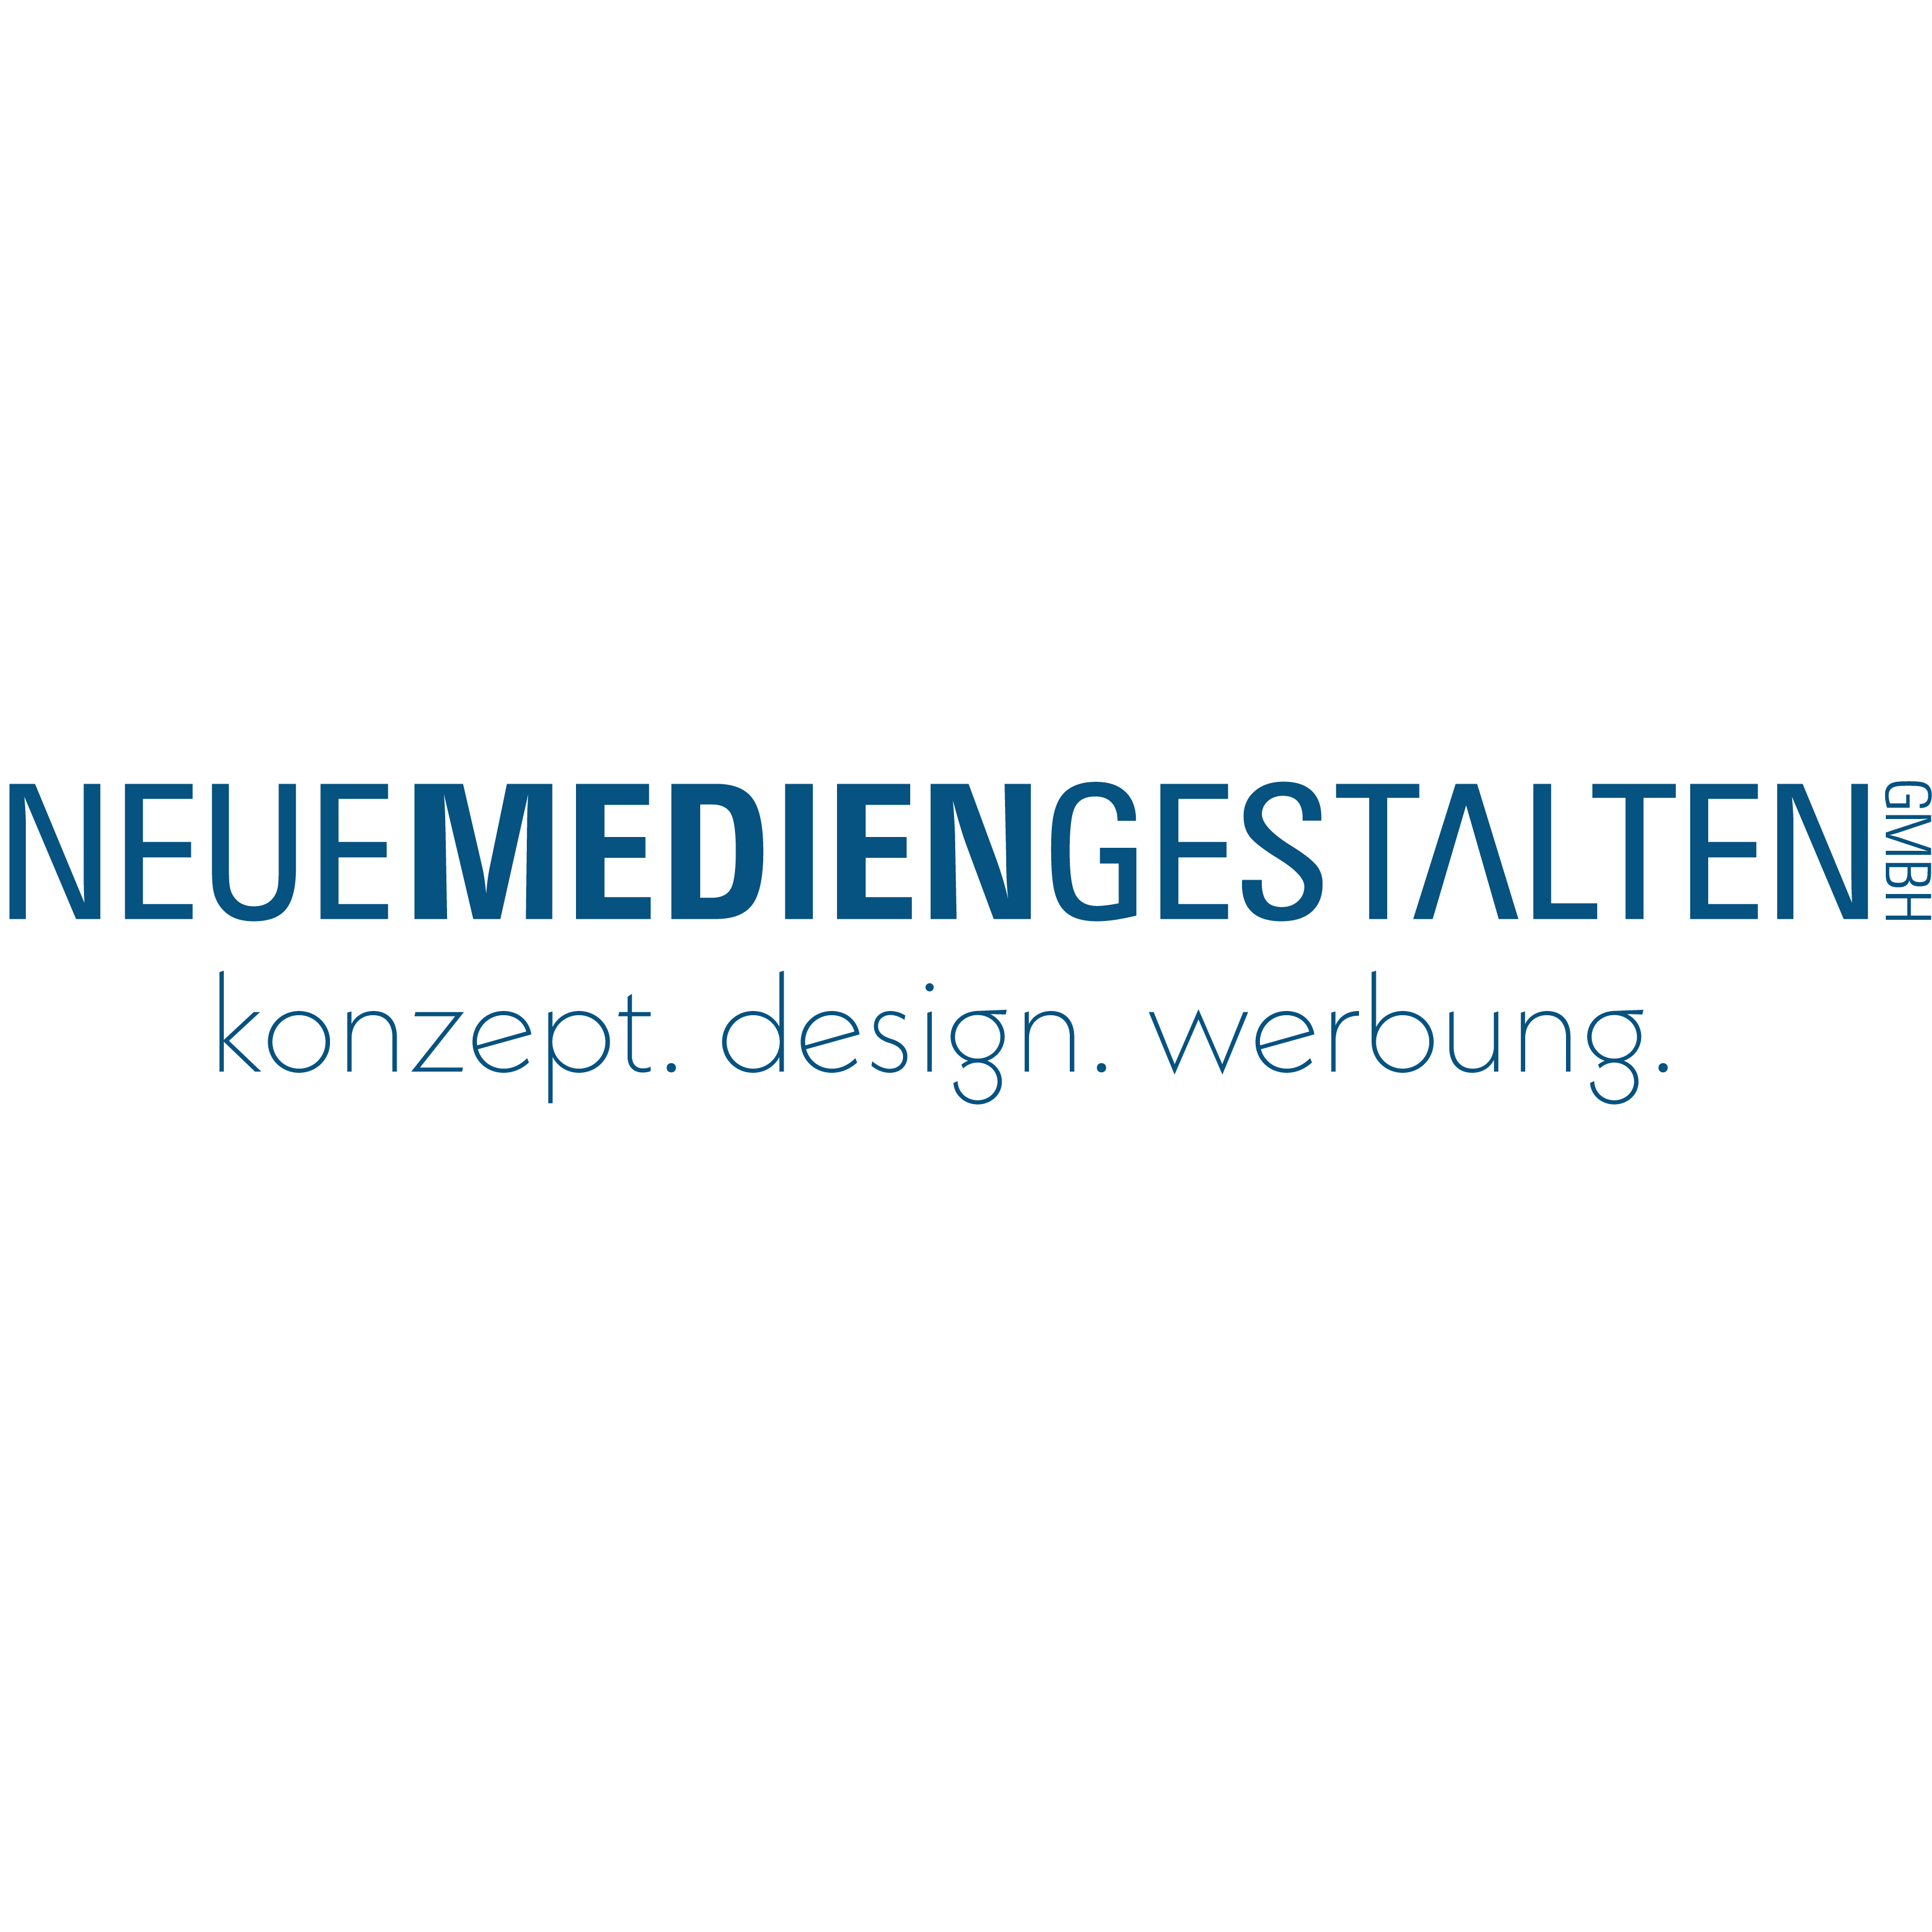 Neue Medien Gestalten GmbH in Wilhelmshaven - Logo